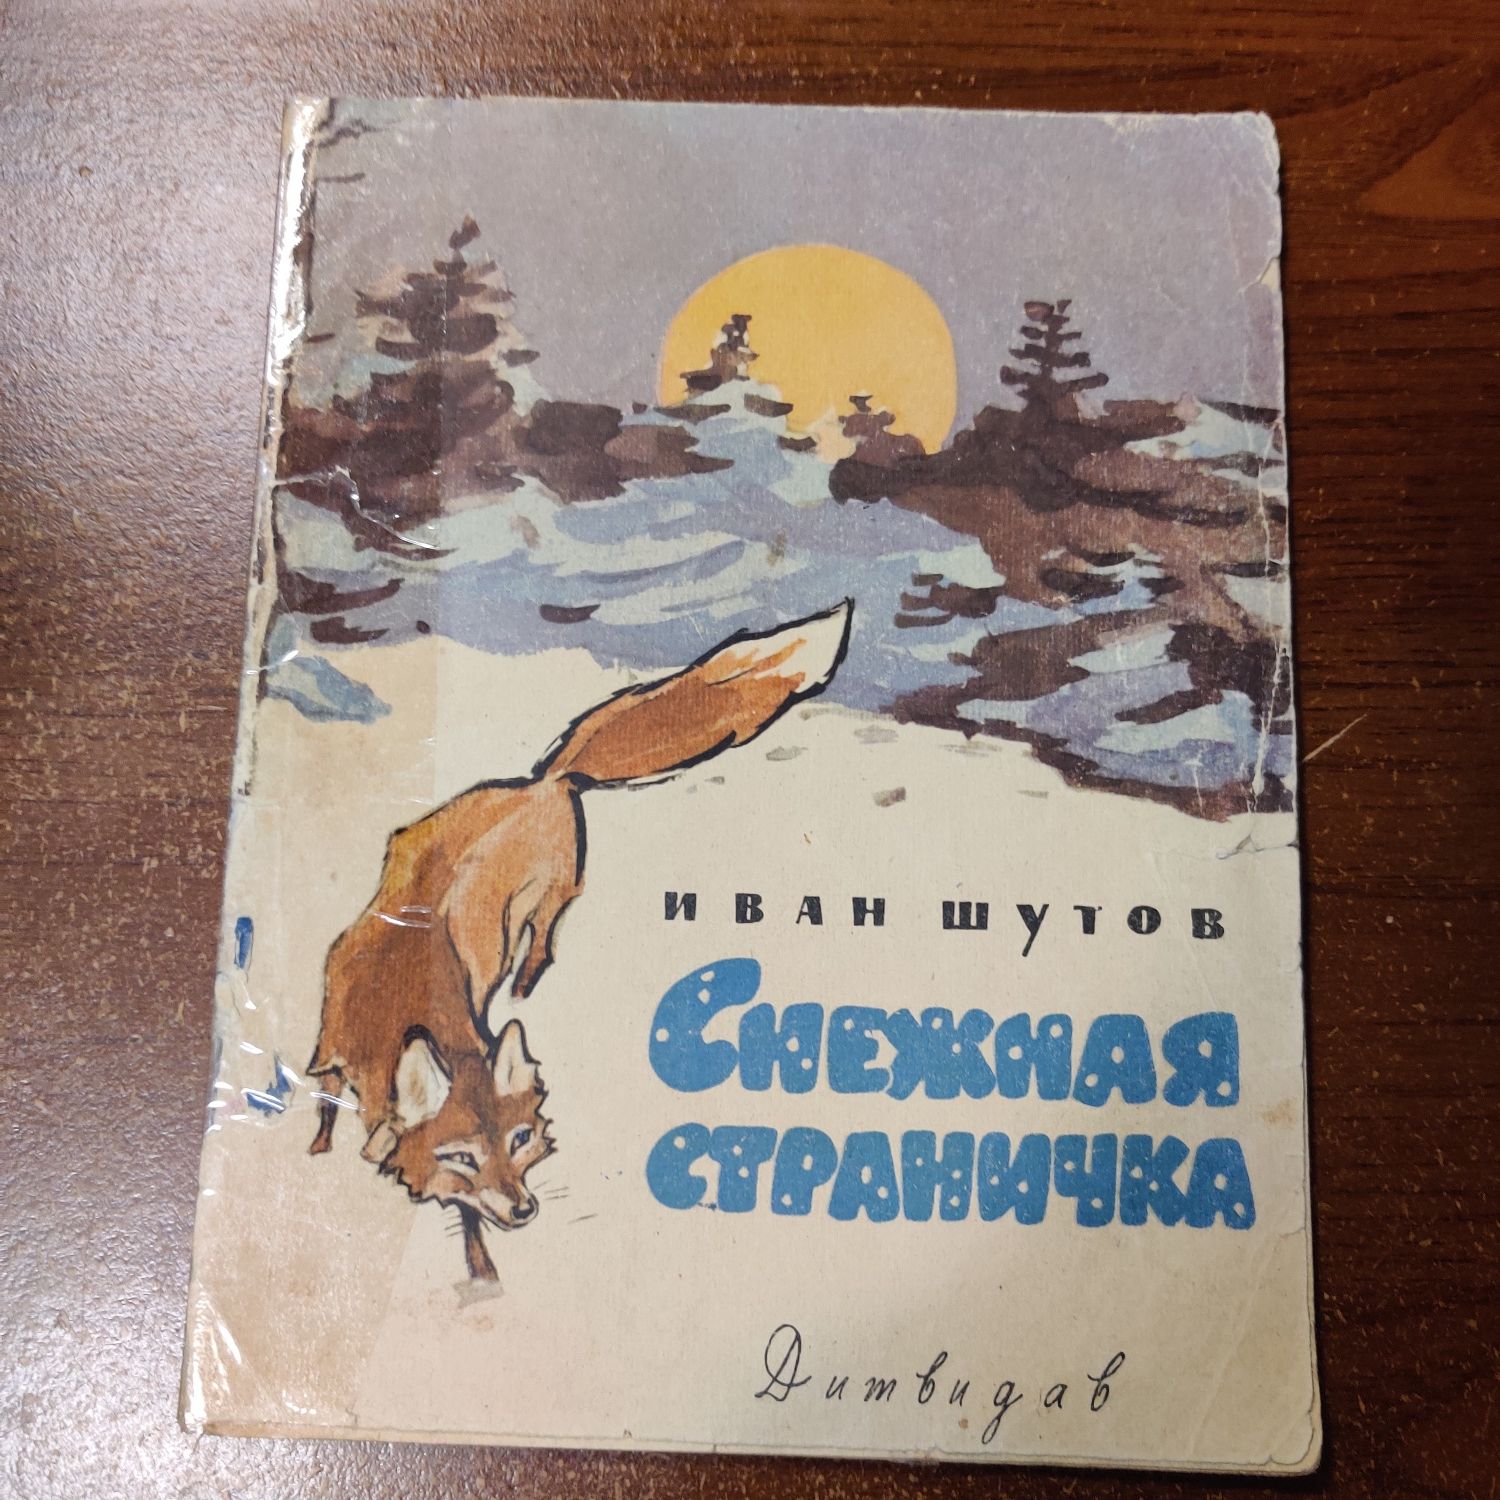 Тонкие детские книги 50-60-х годов советского периода.